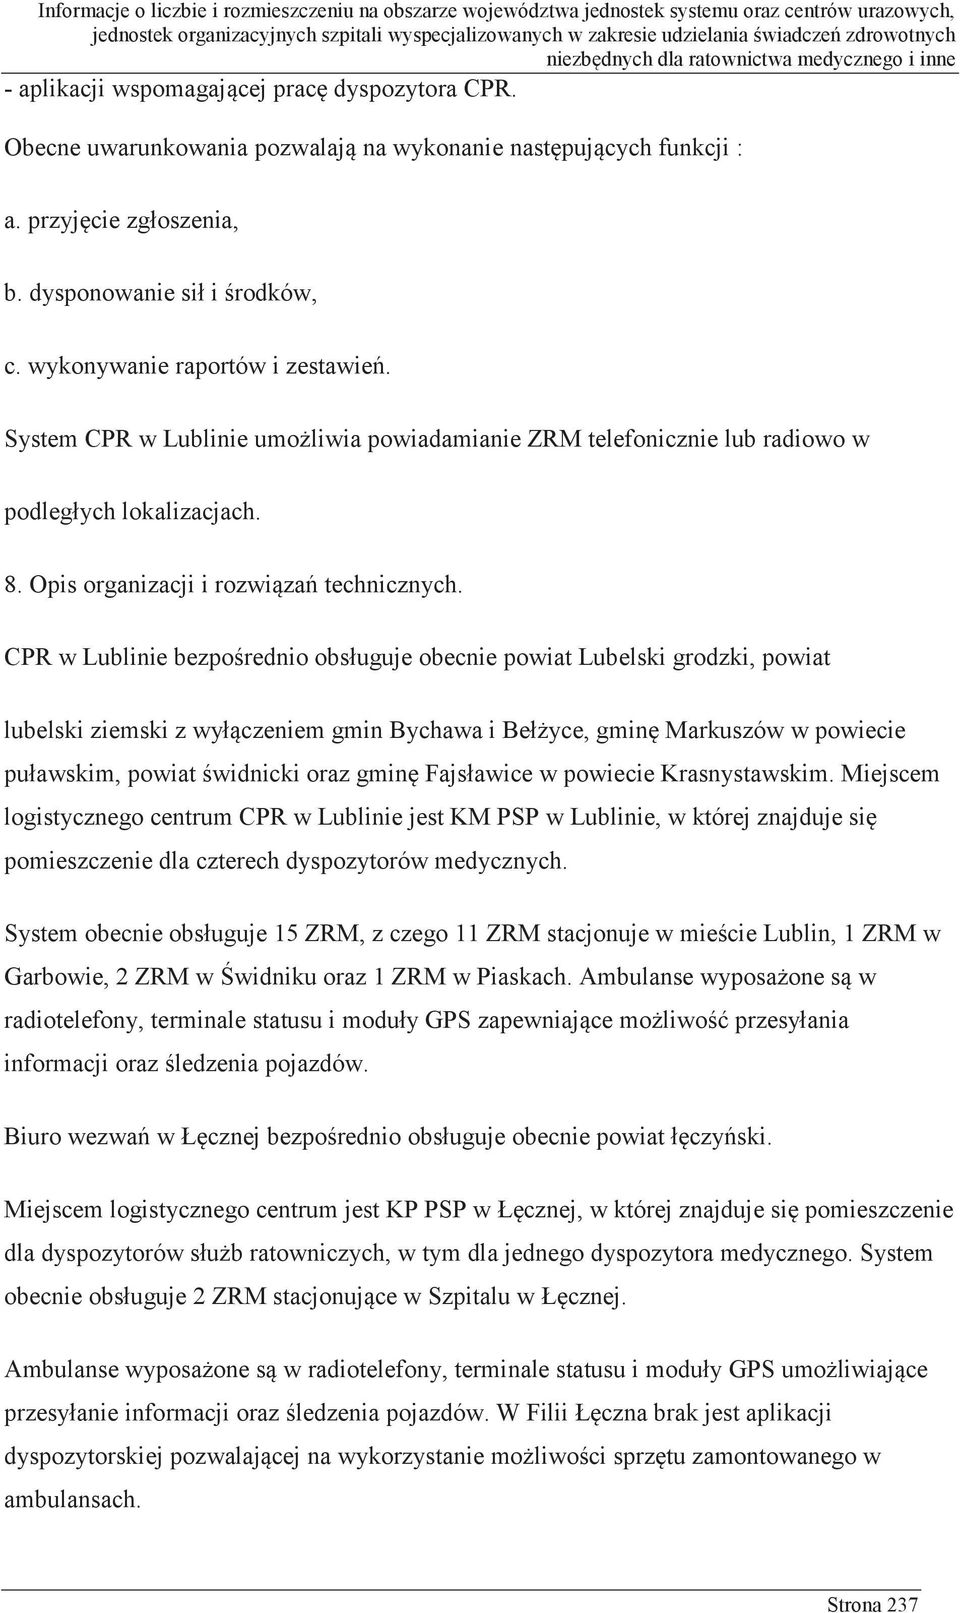 CPR w Lublinie bezpośrednio obsługuje obecnie powiat Lubelski grodzki, powiat lubelski ziemski z wyłączeniem gmin Bychawa i Bełżyce, gminę Markuszów w powiecie puławskim, powiat świdnicki oraz gminę